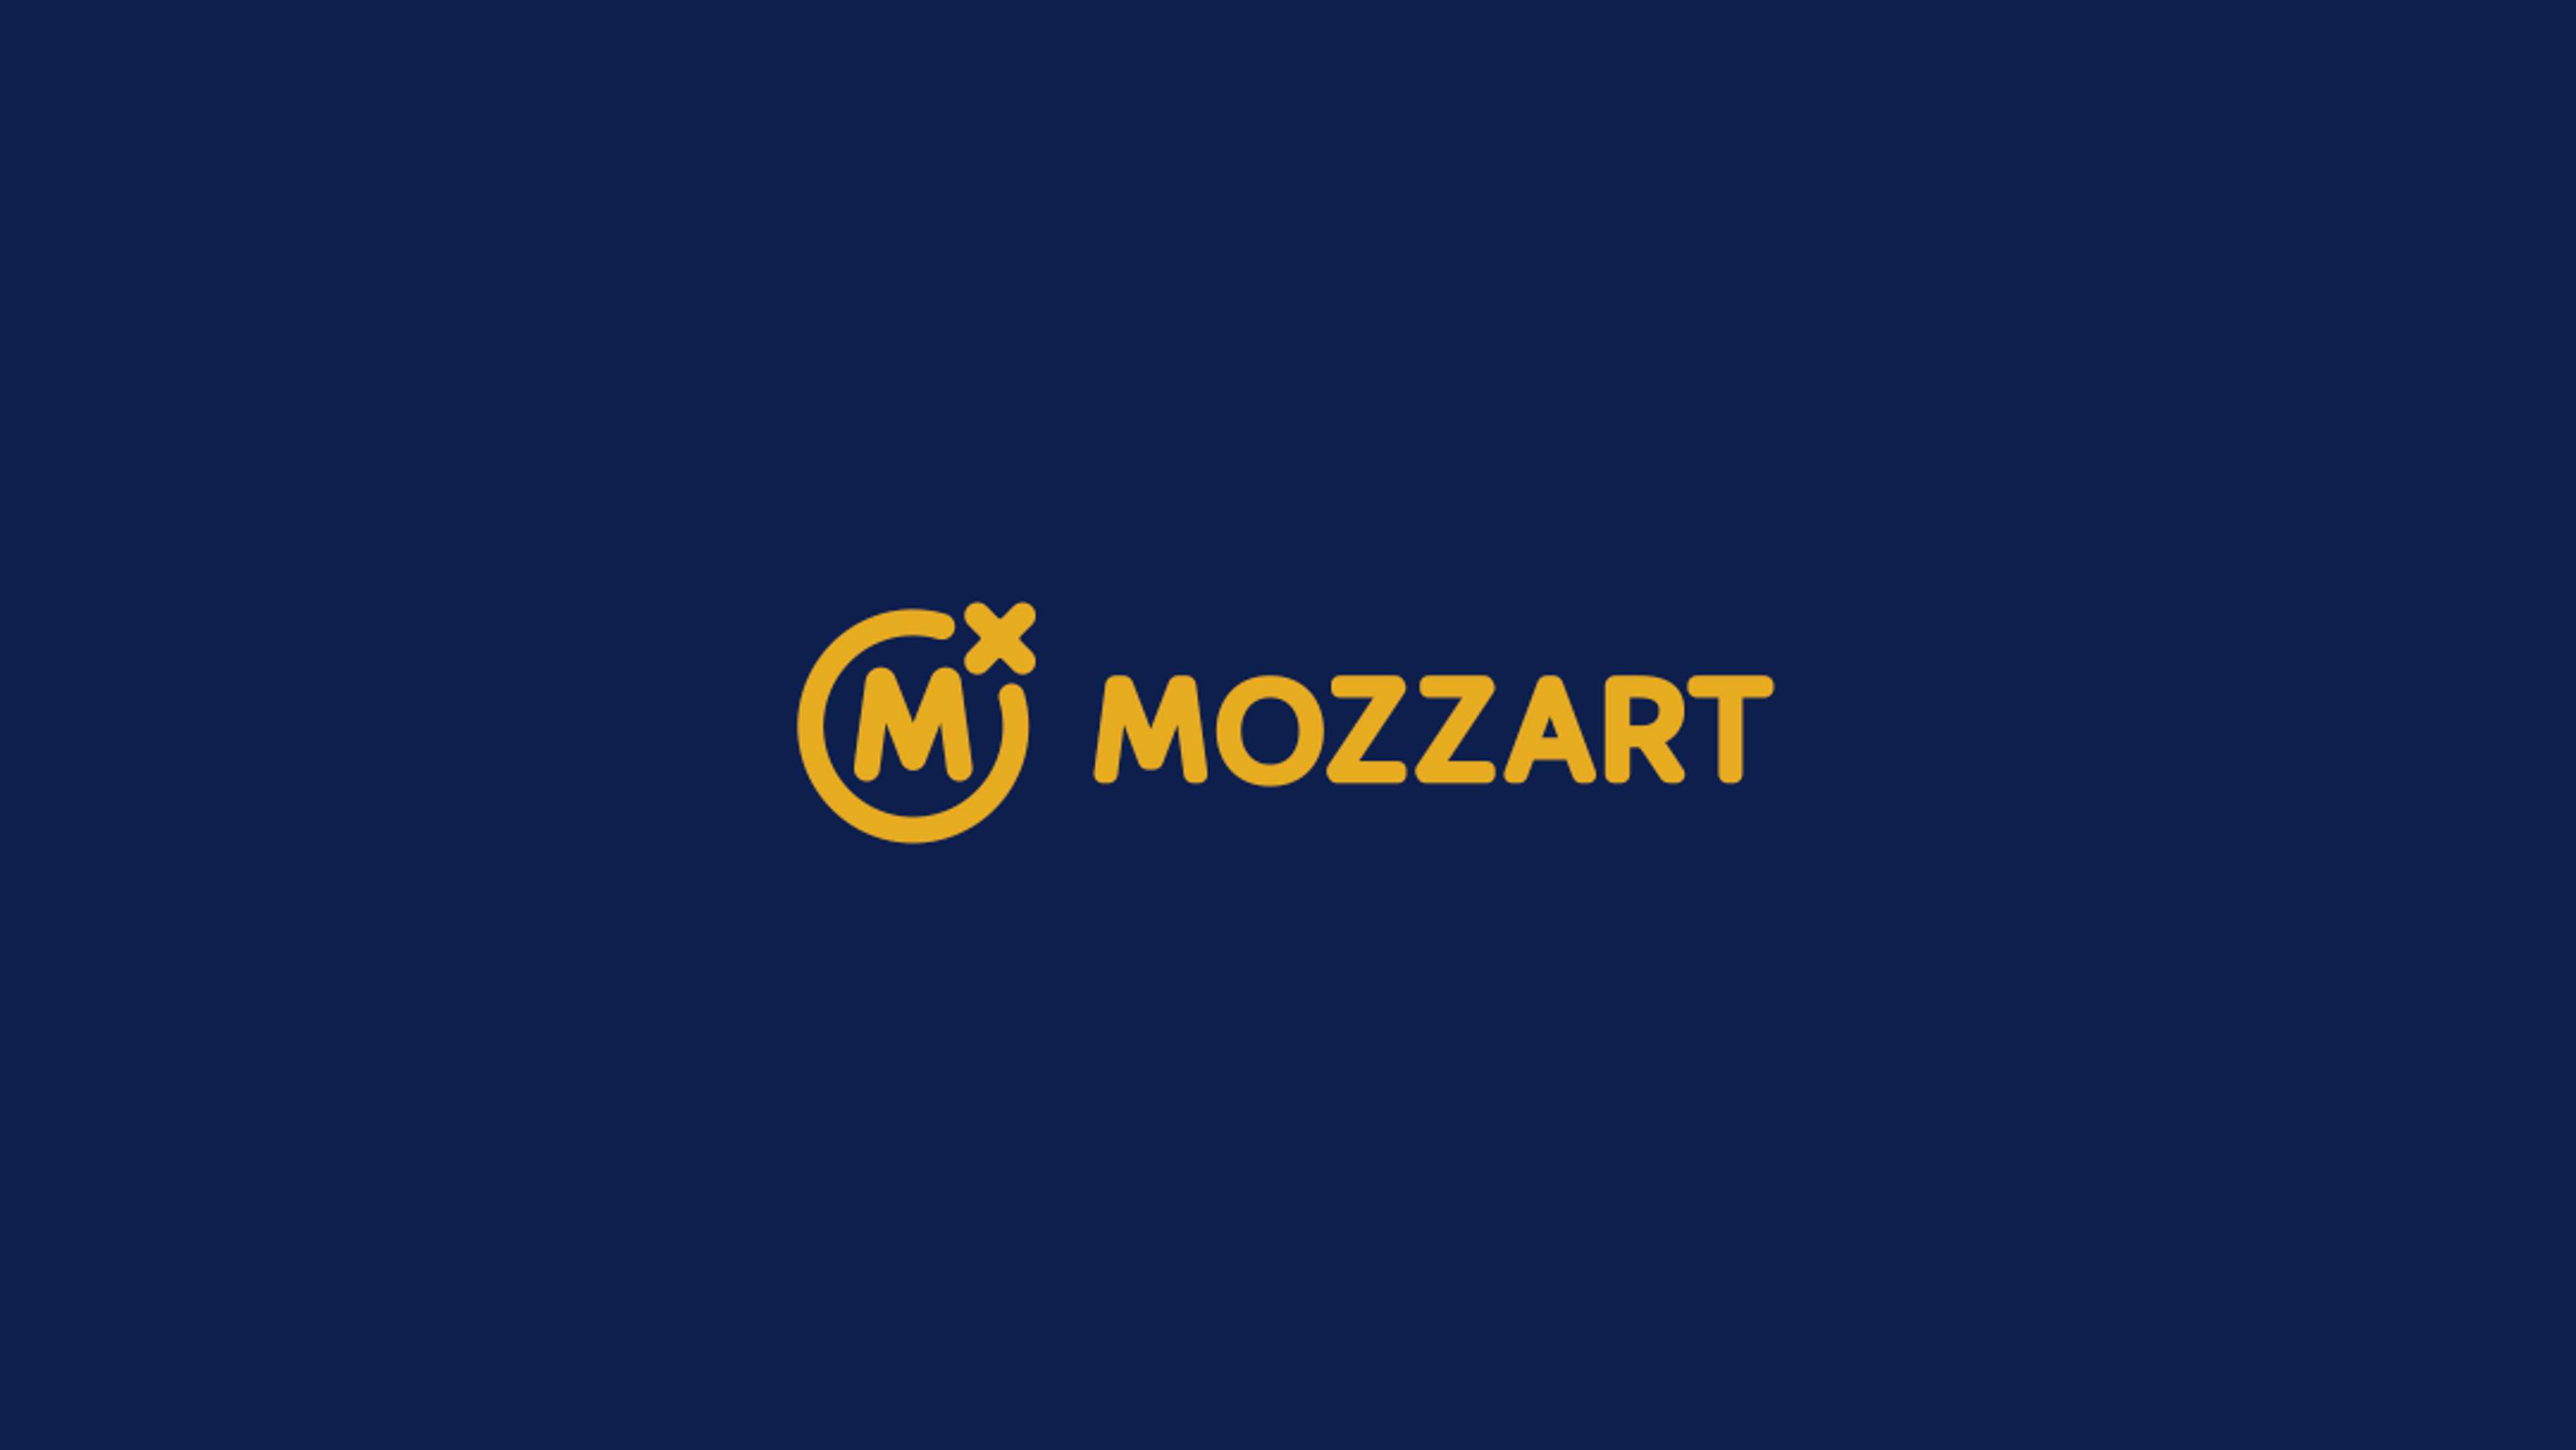 mozzartbet logo